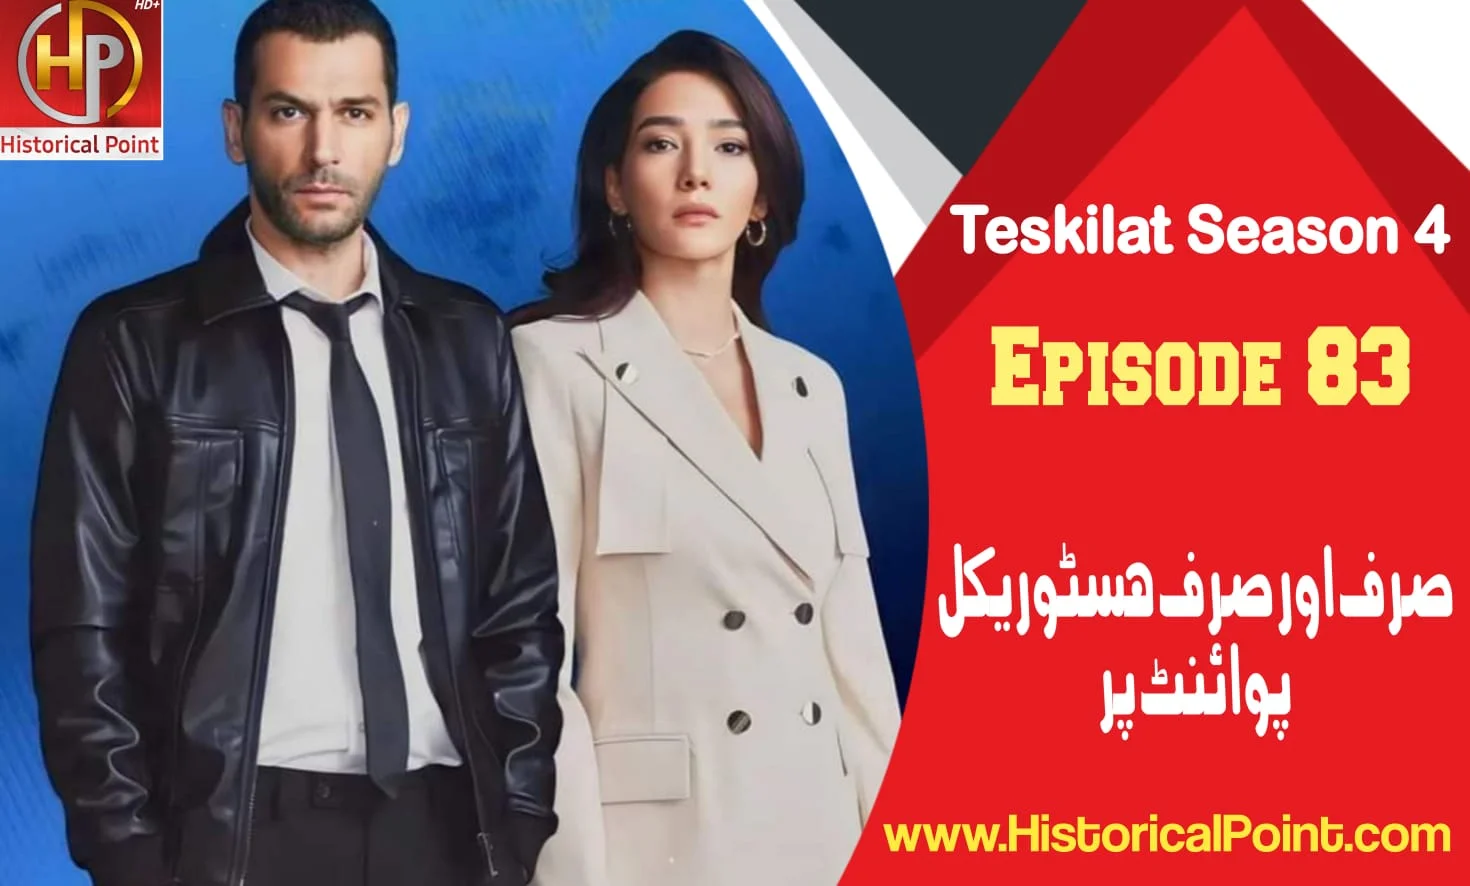 Teskilat Season 4 Episode 83